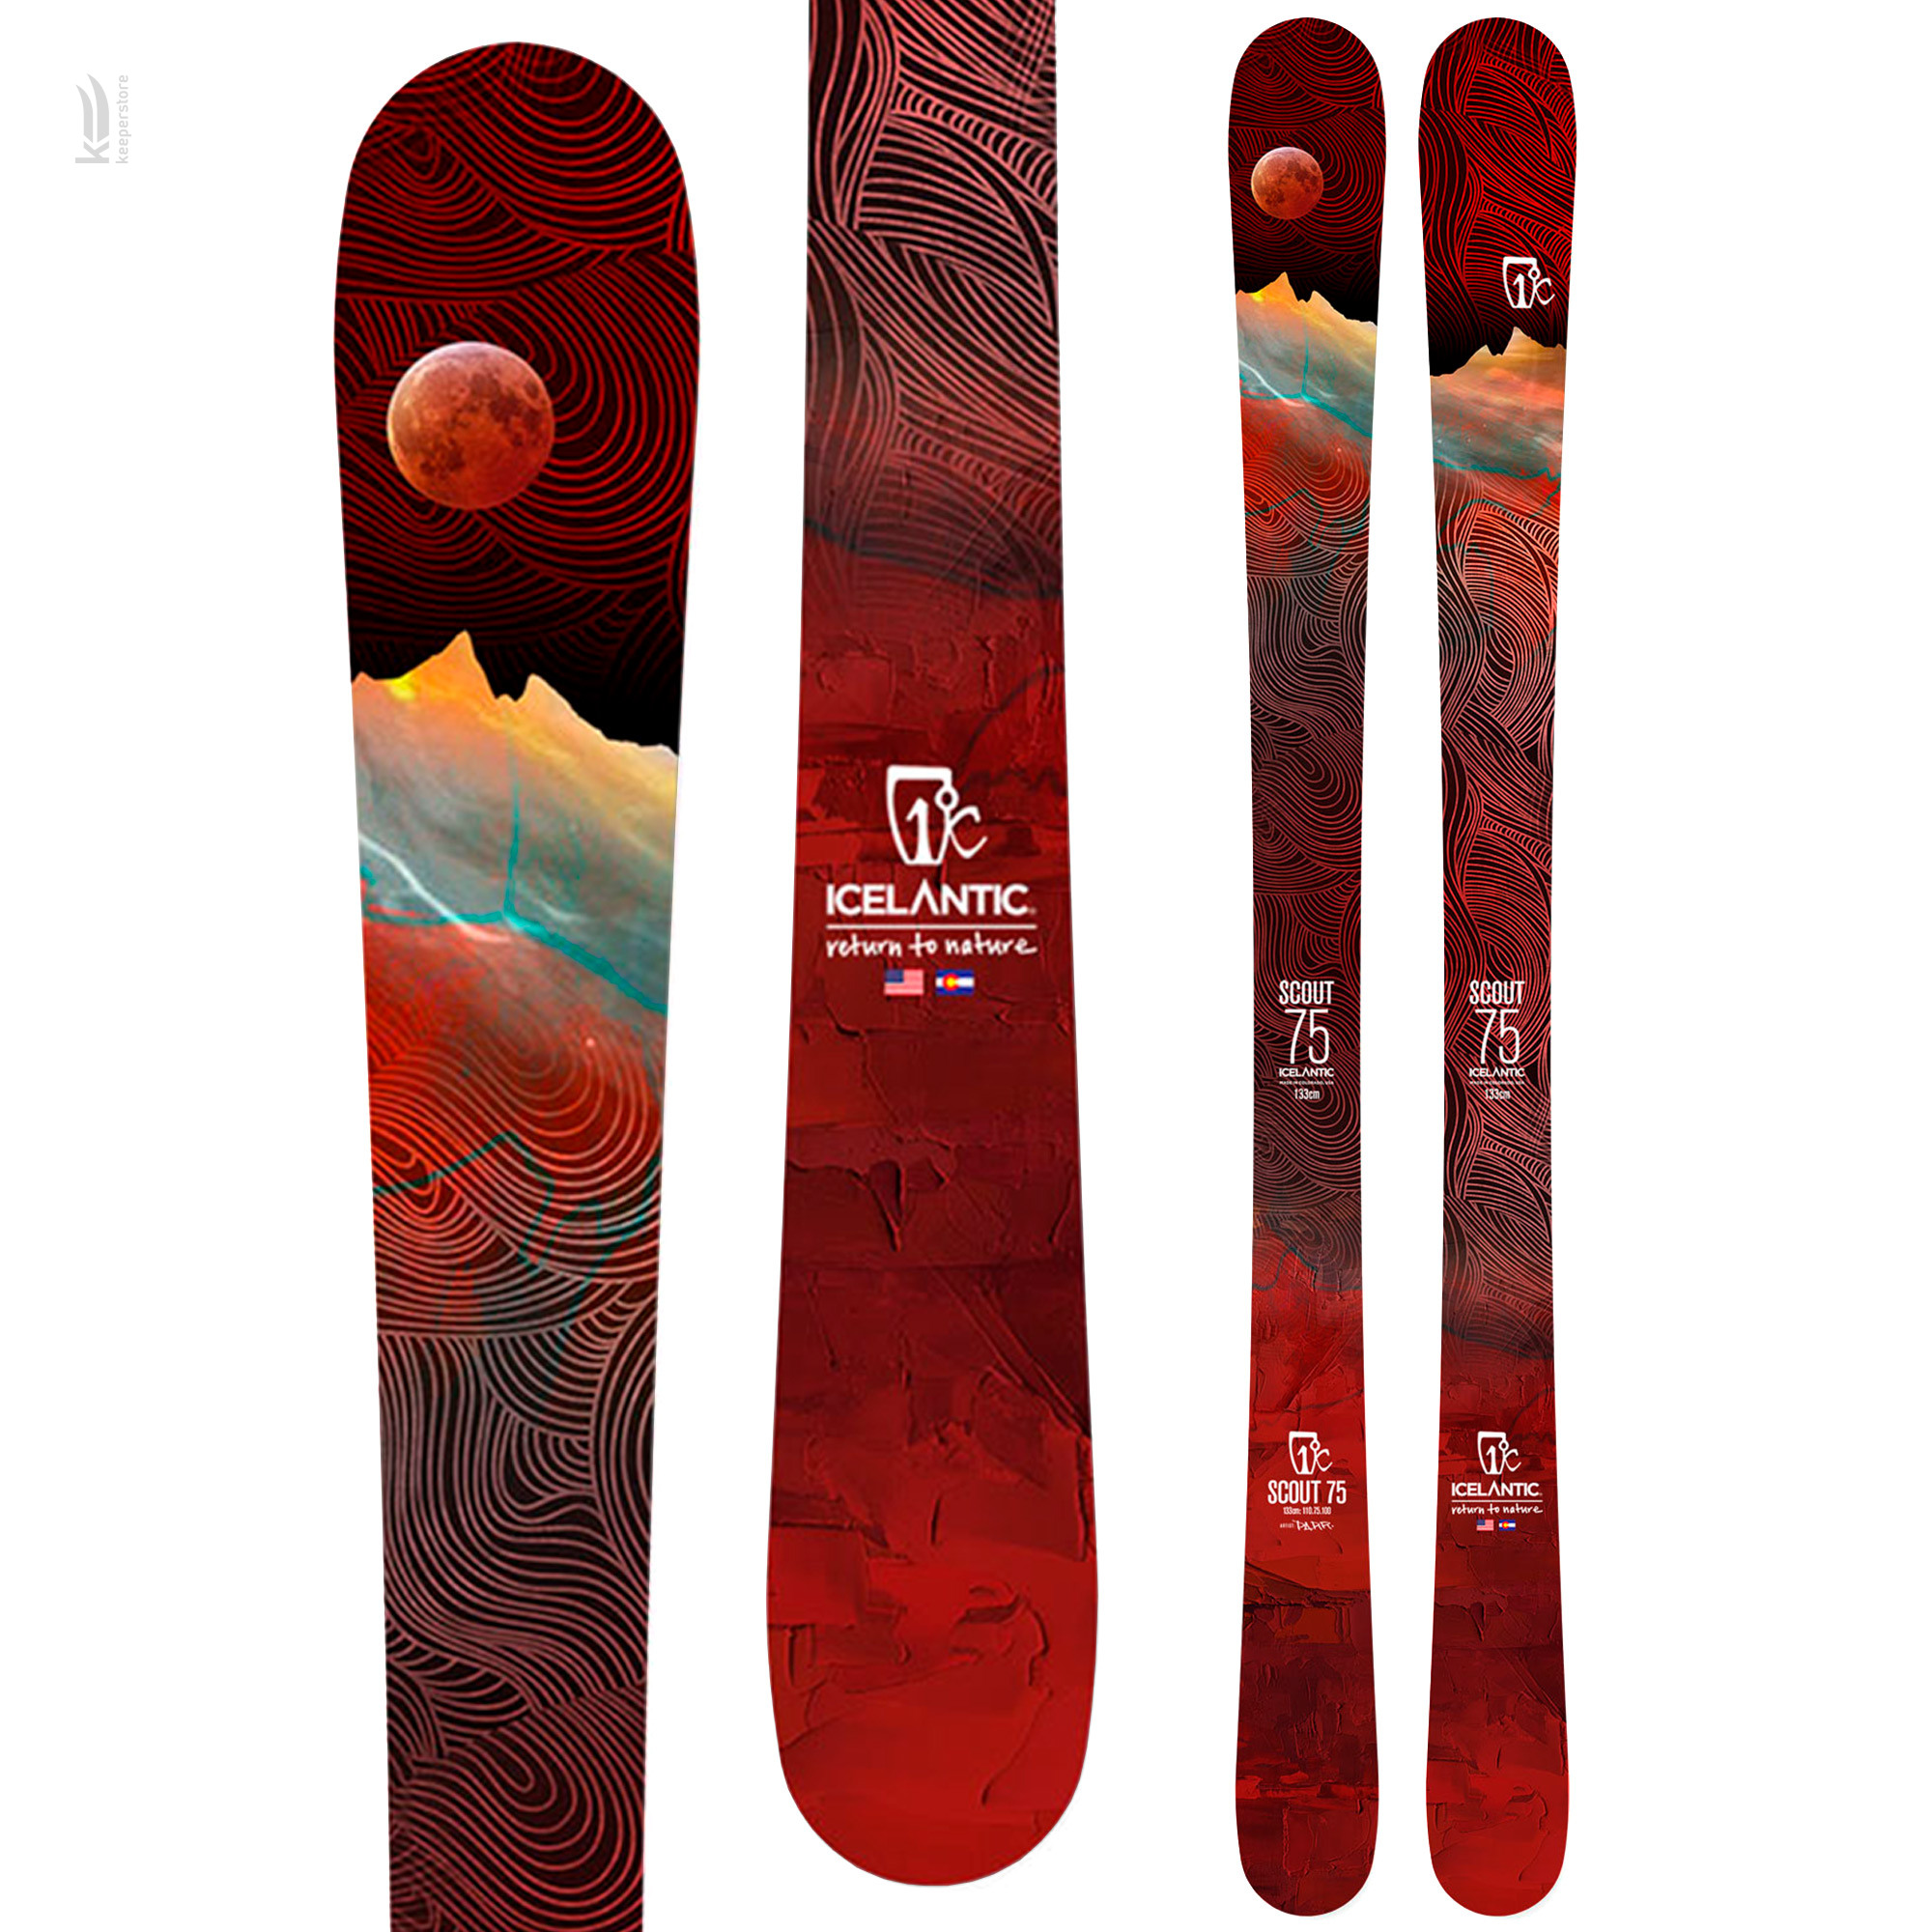 Купить лыжи для фристайла/парка Icelantic Scout 75 2020/2021 133cm в Киеве